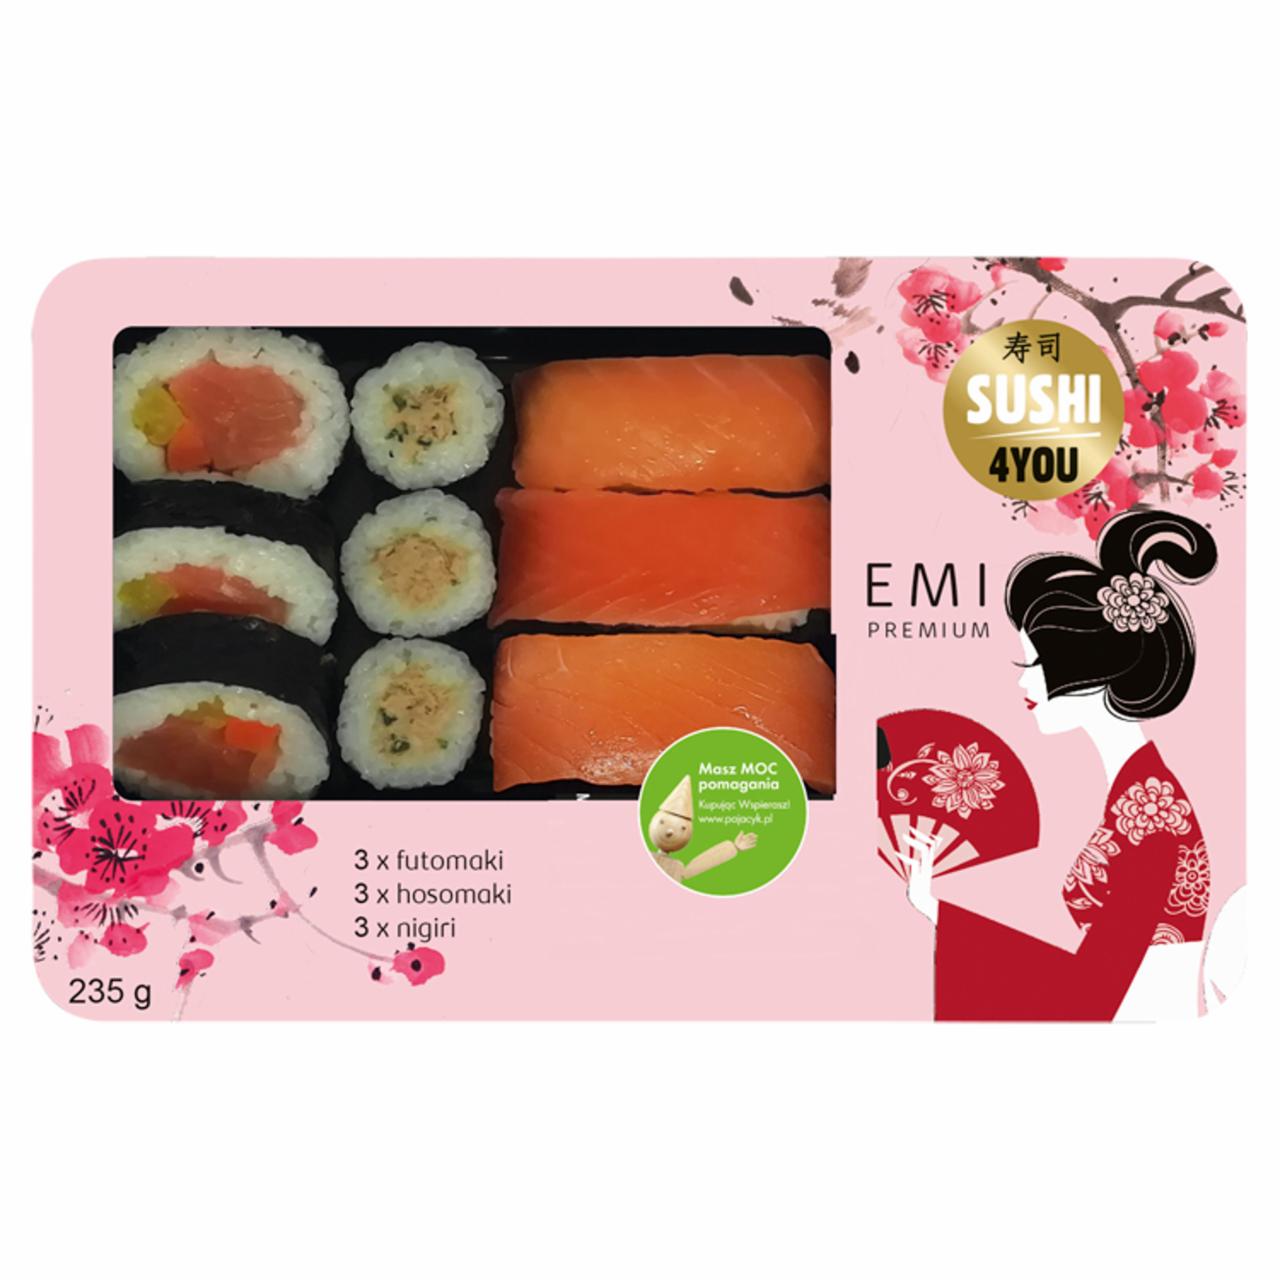 Zdjęcia - Sushi4You Premium Sushi Emi 235 g